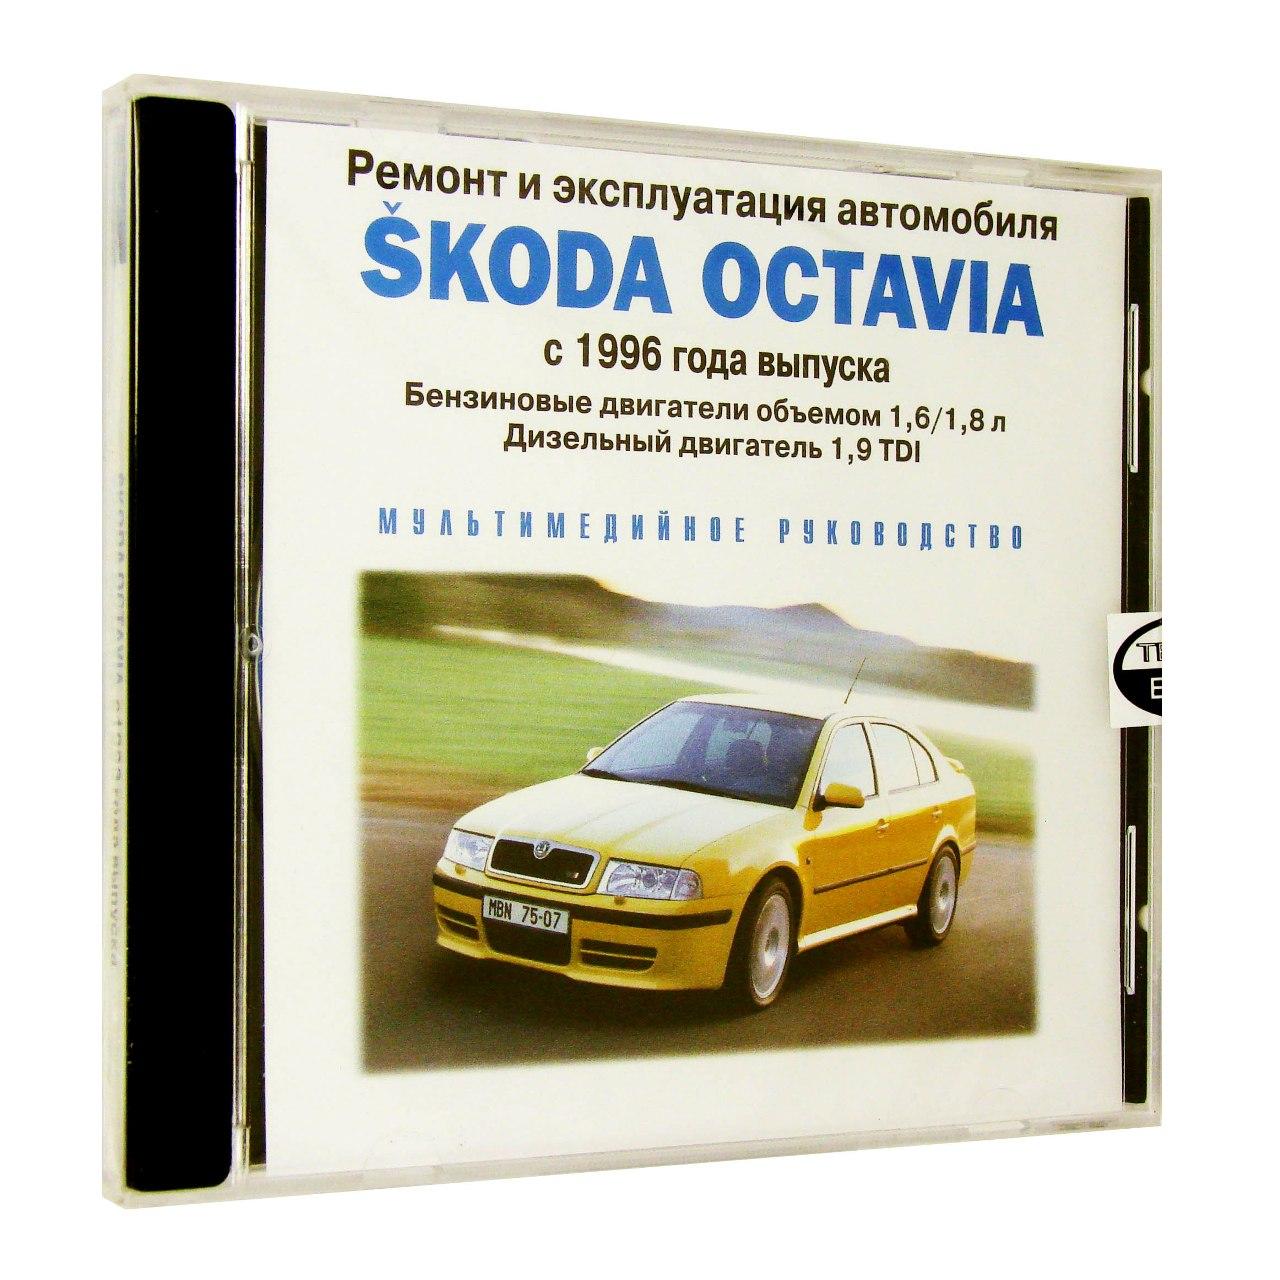 Компьютерный компакт-диск Skoda Octavia c 1996 г. в.: ремонт и эксплуатация автомобиля (ПК), фирма "RMG Multimedia", 1CD